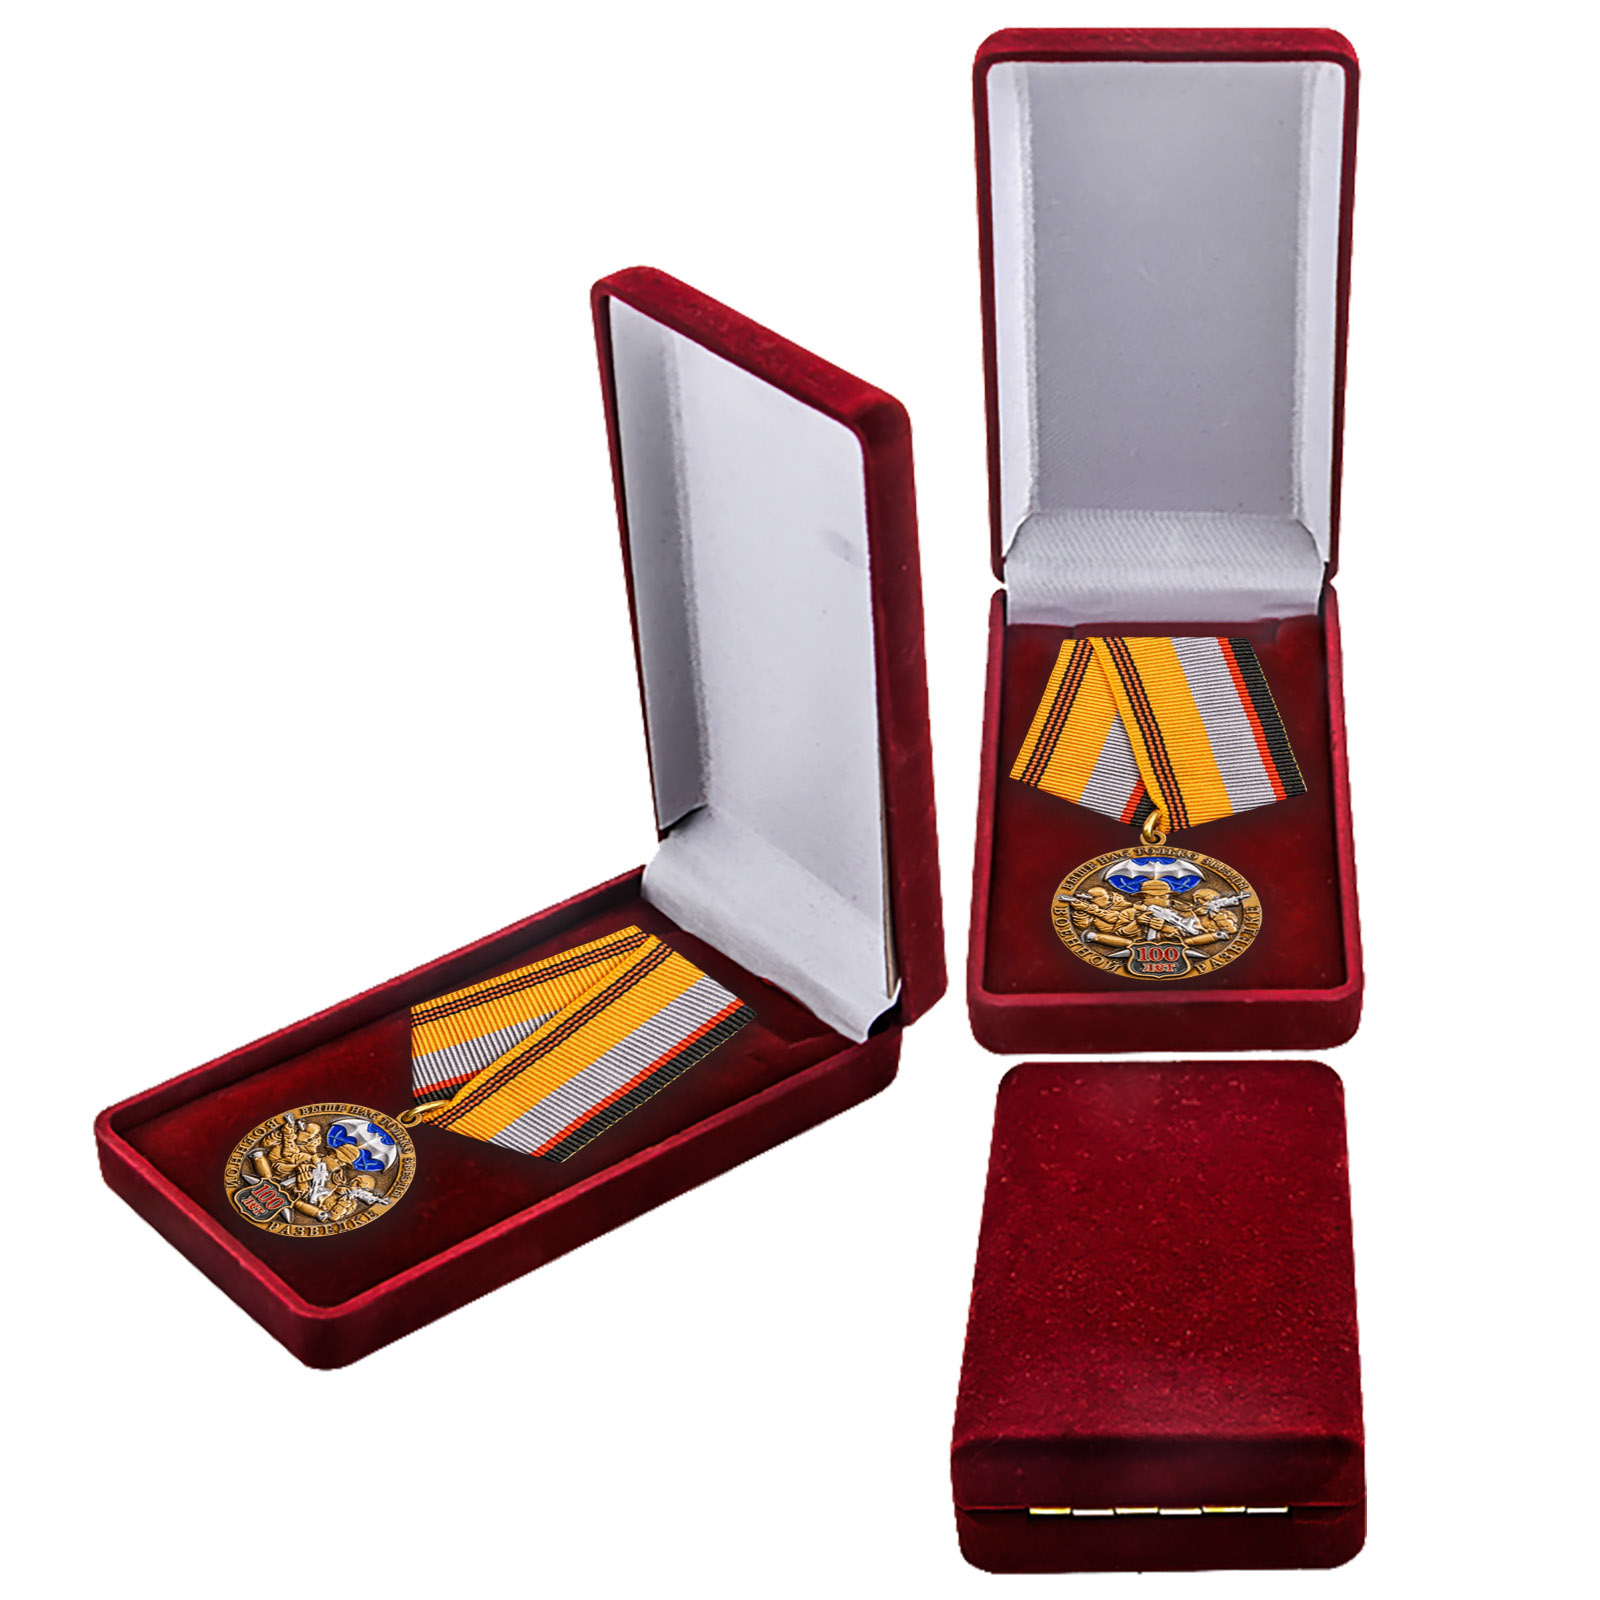 Памятная медаль "Военная разведка" с удобной доставкой